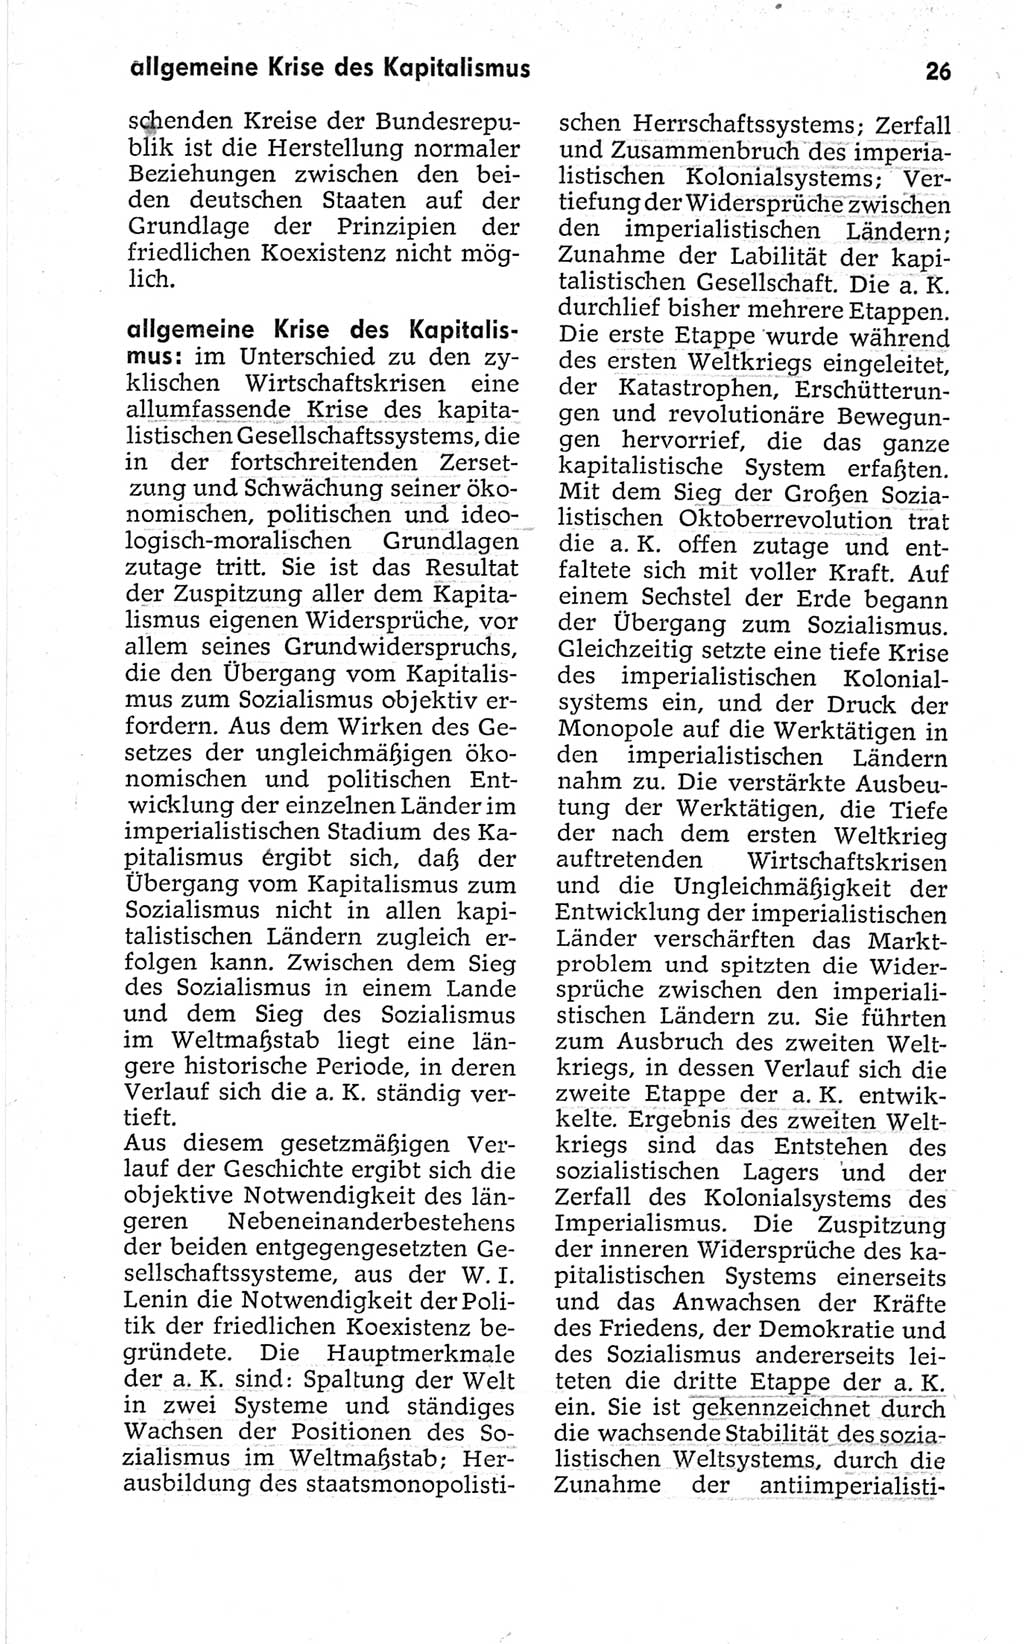 Kleines politisches Wörterbuch [Deutsche Demokratische Republik (DDR)] 1967, Seite 26 (Kl. pol. Wb. DDR 1967, S. 26)